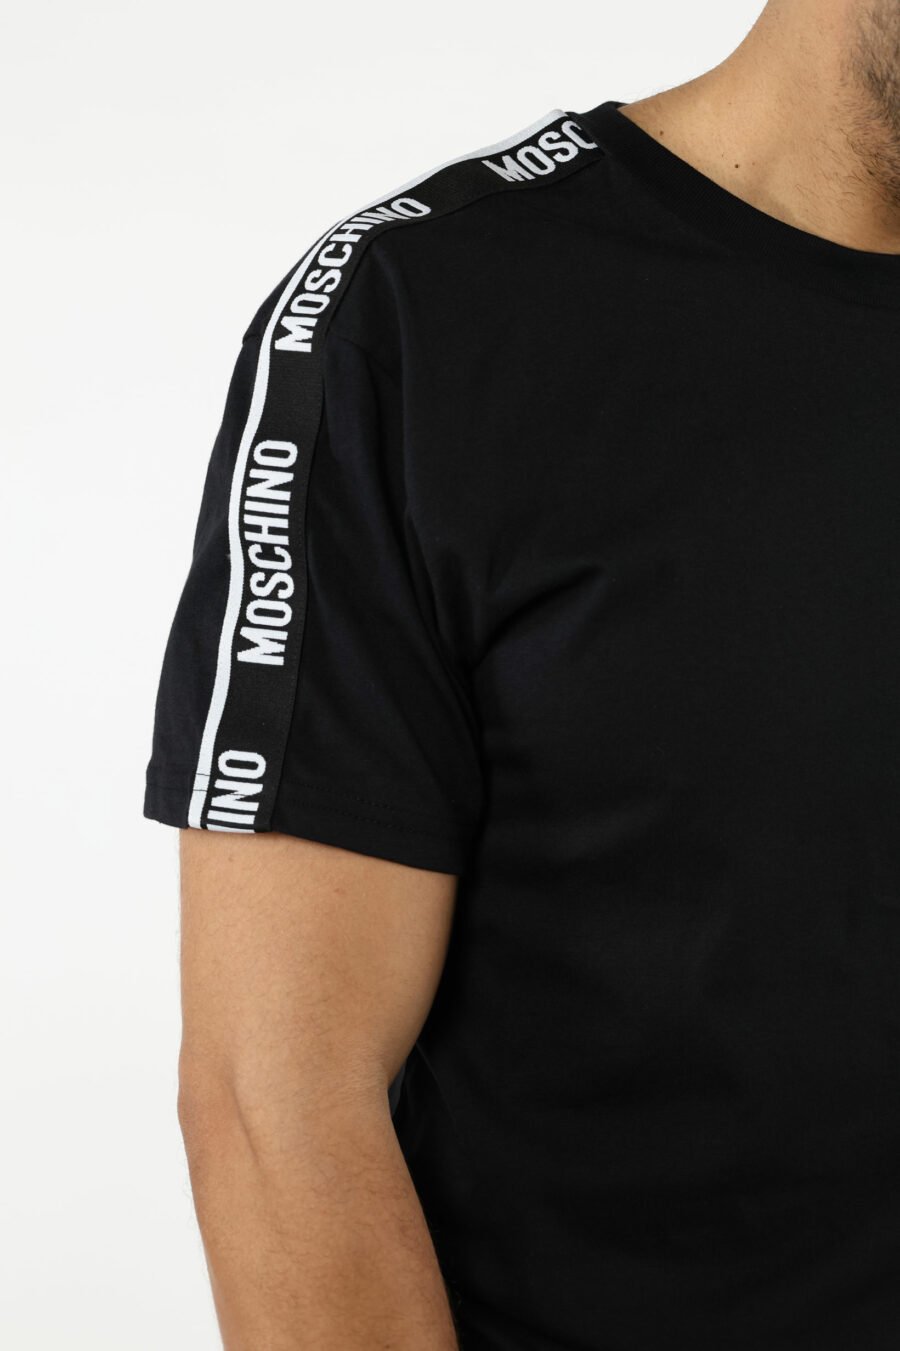 Camiseta negra con minilogo en cinta - 110985